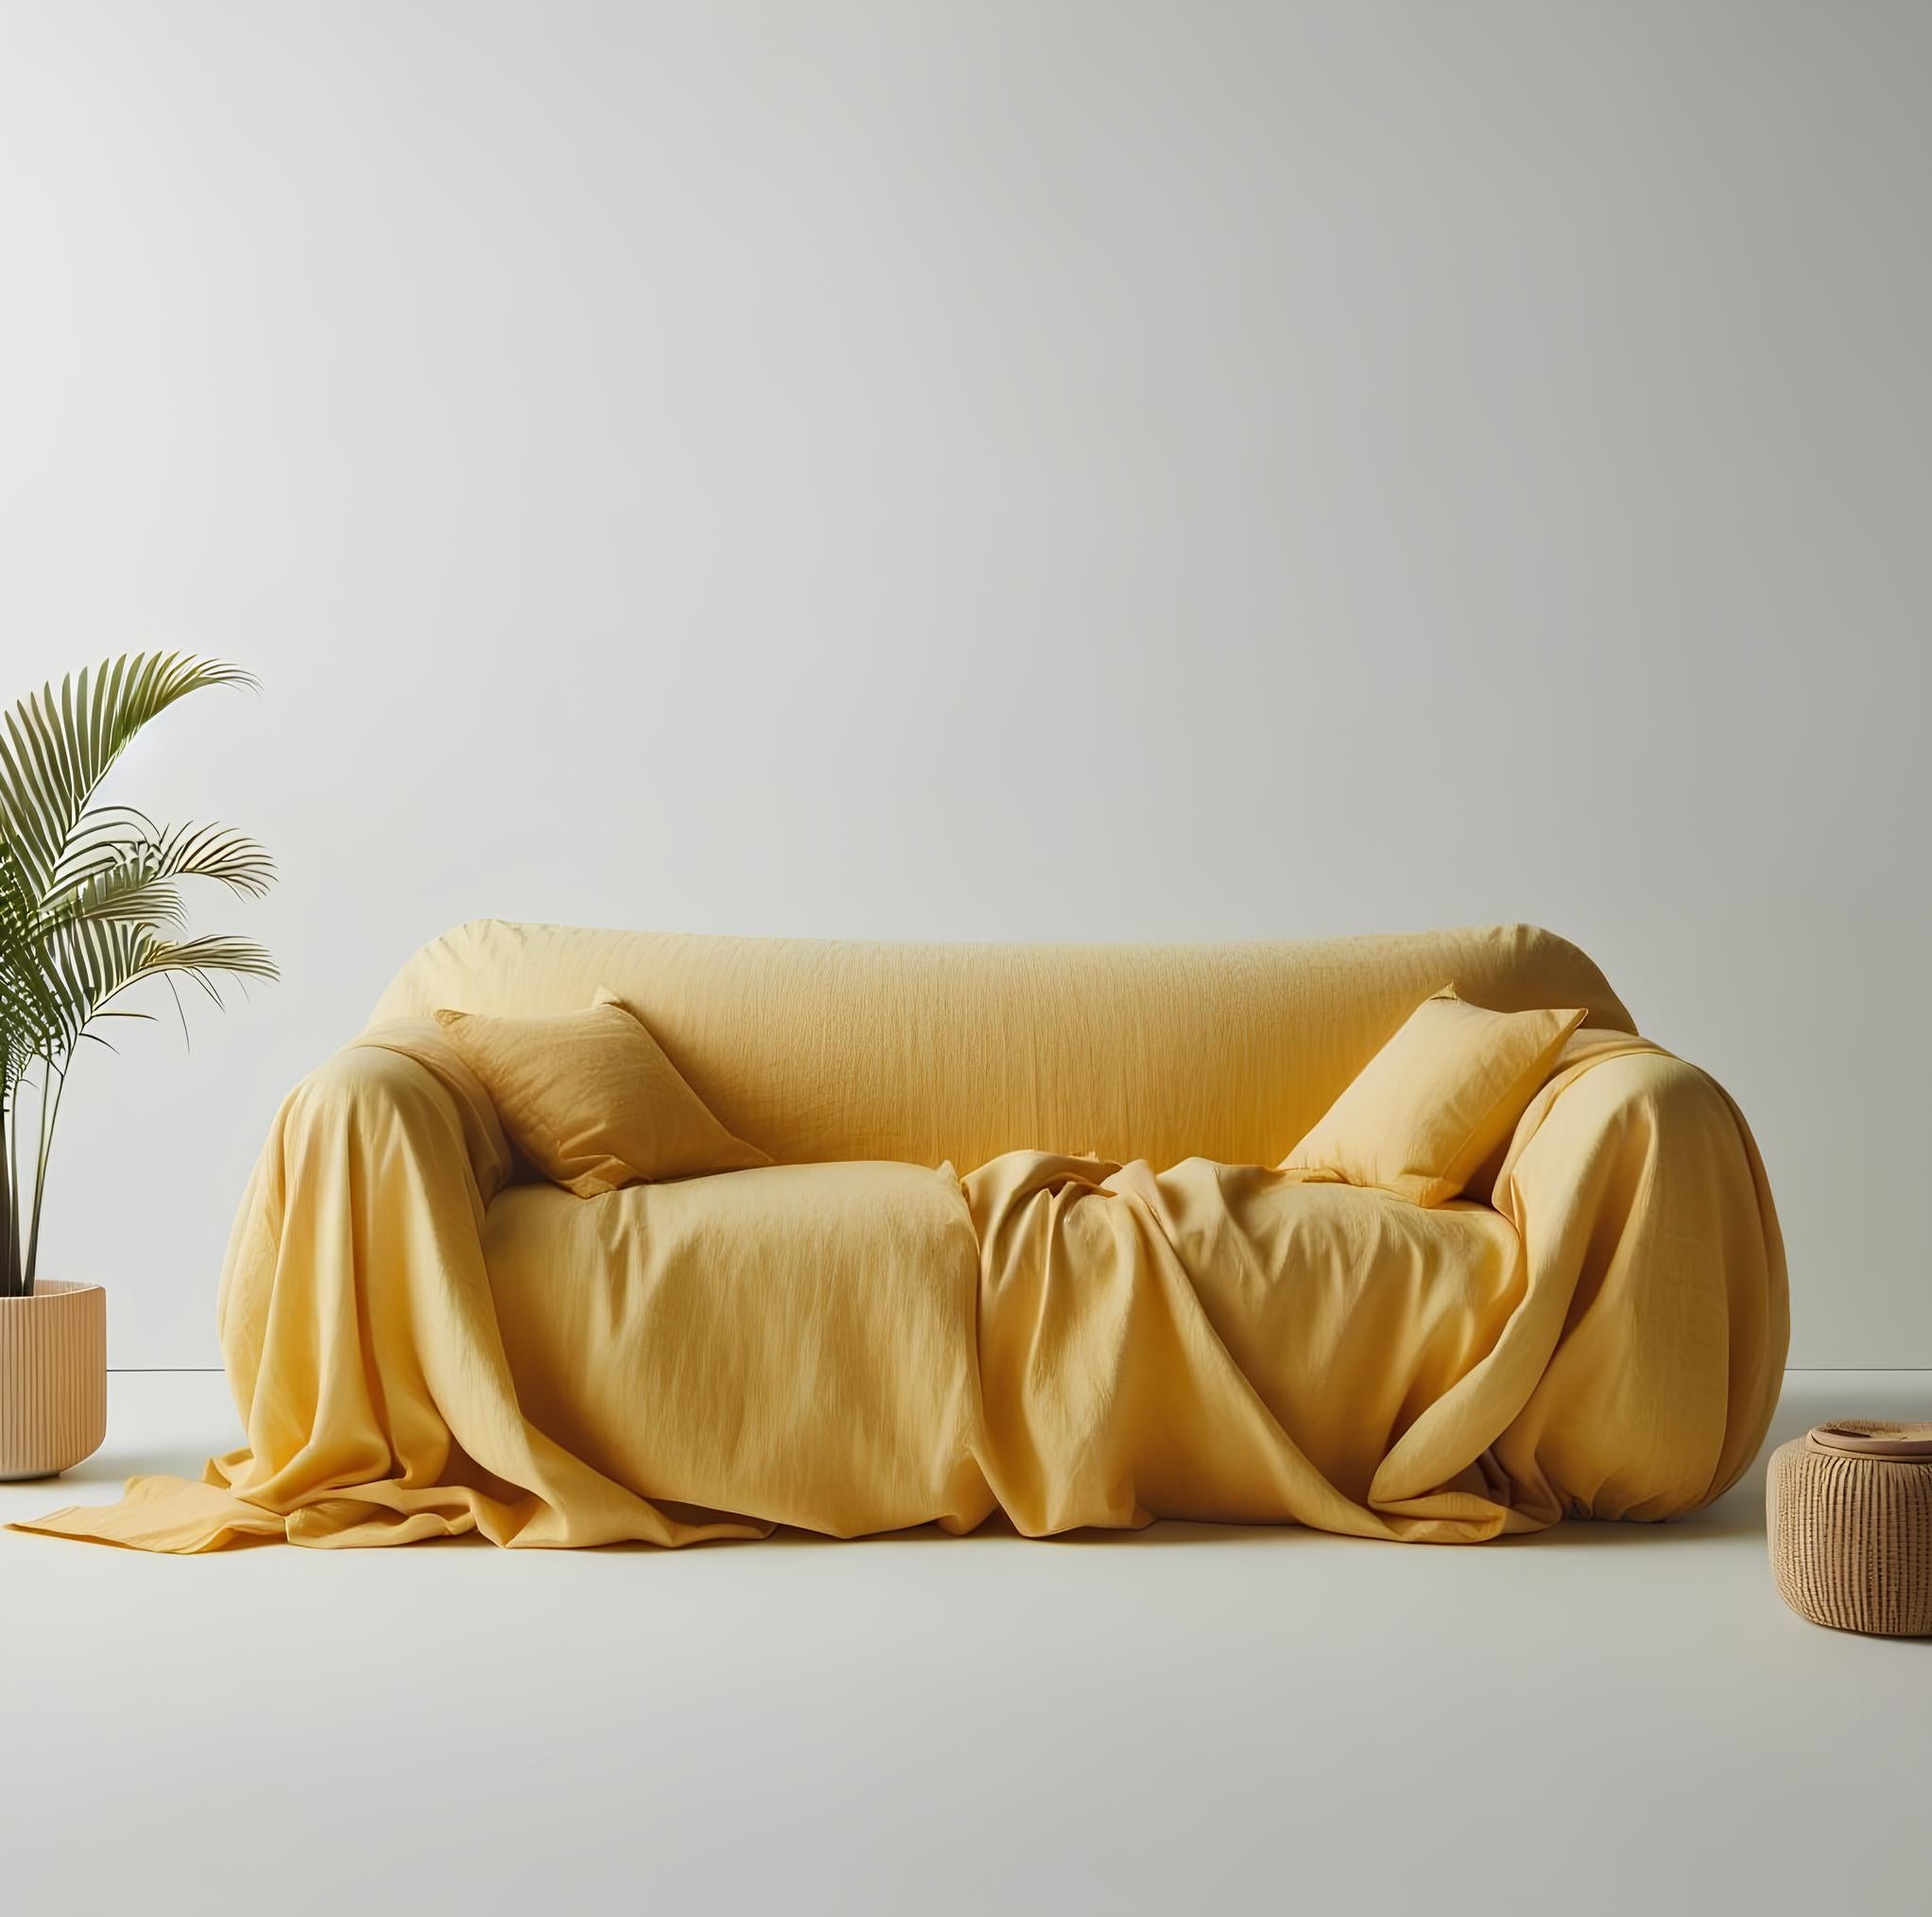 Mustard Yellow Linen Locker Handmade Linen Couch Cover